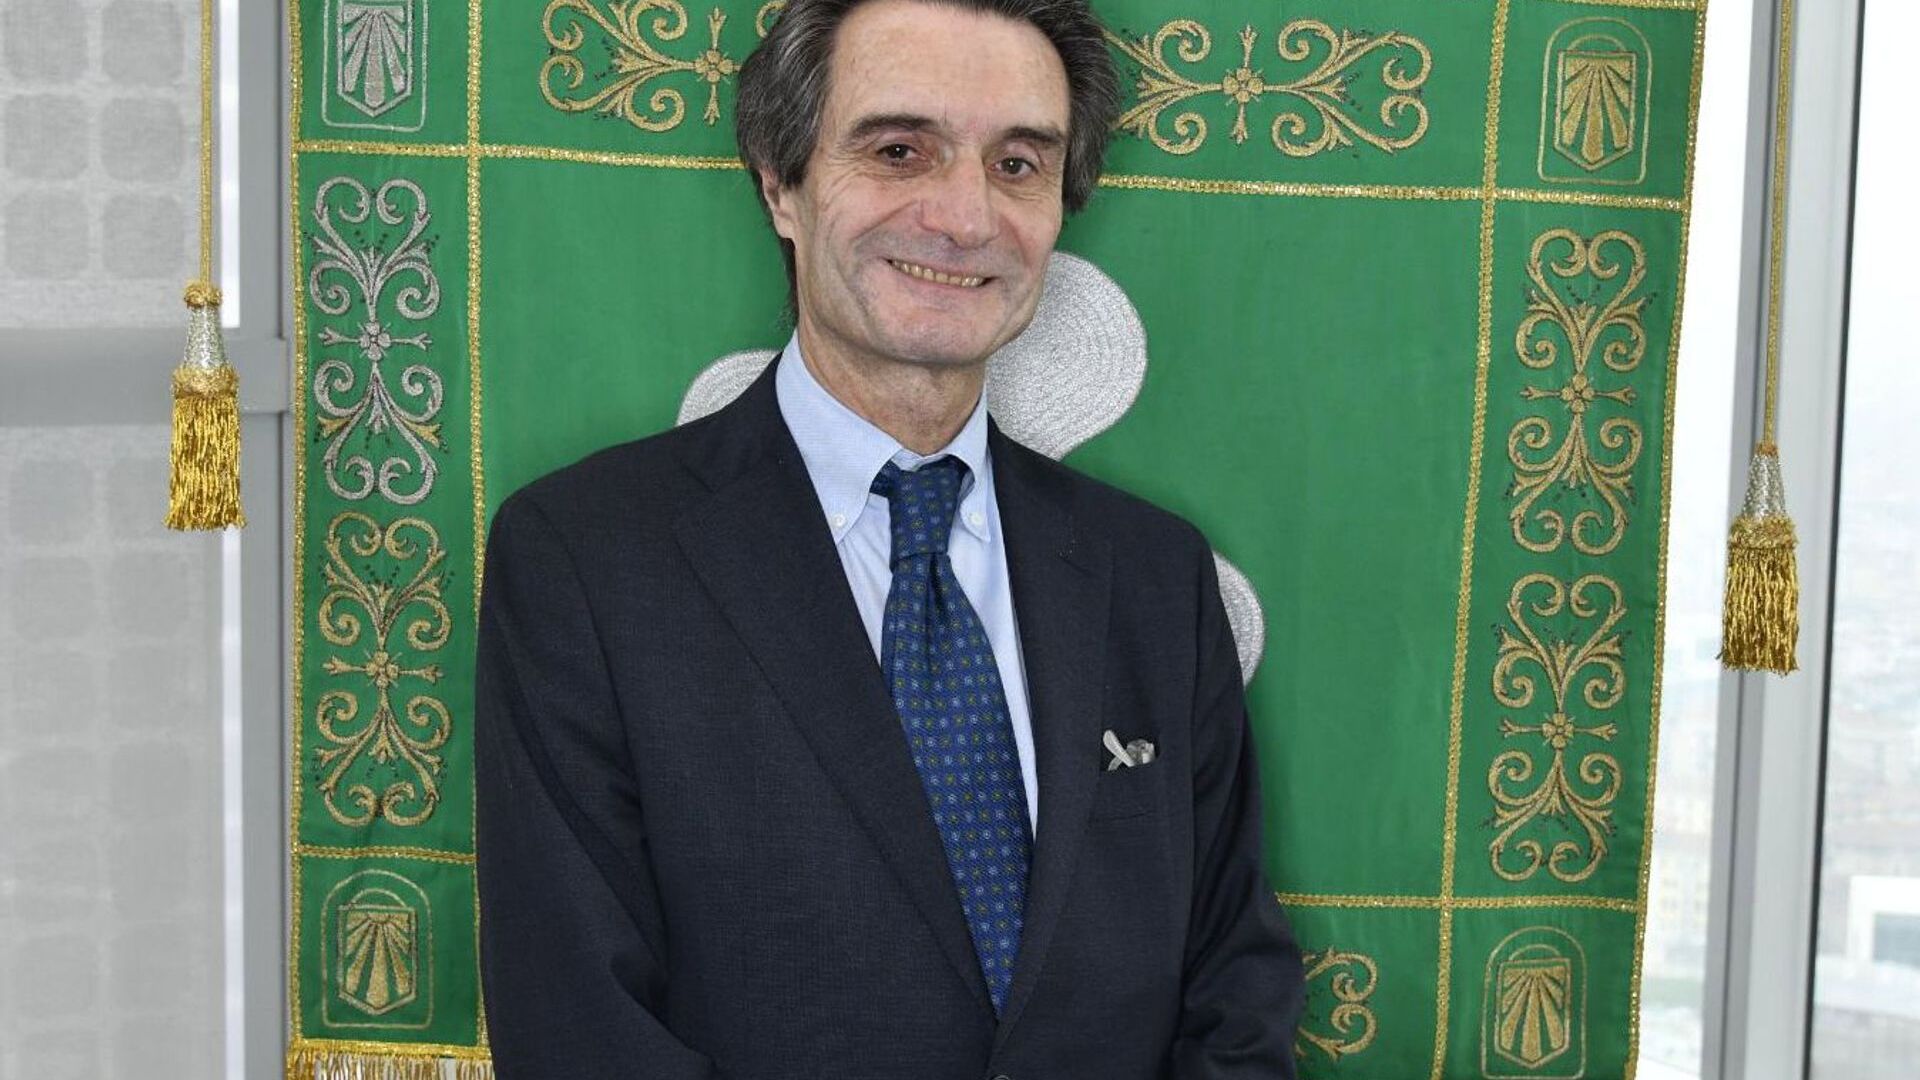 Attilio Fontana är president för regionen Lombardiet